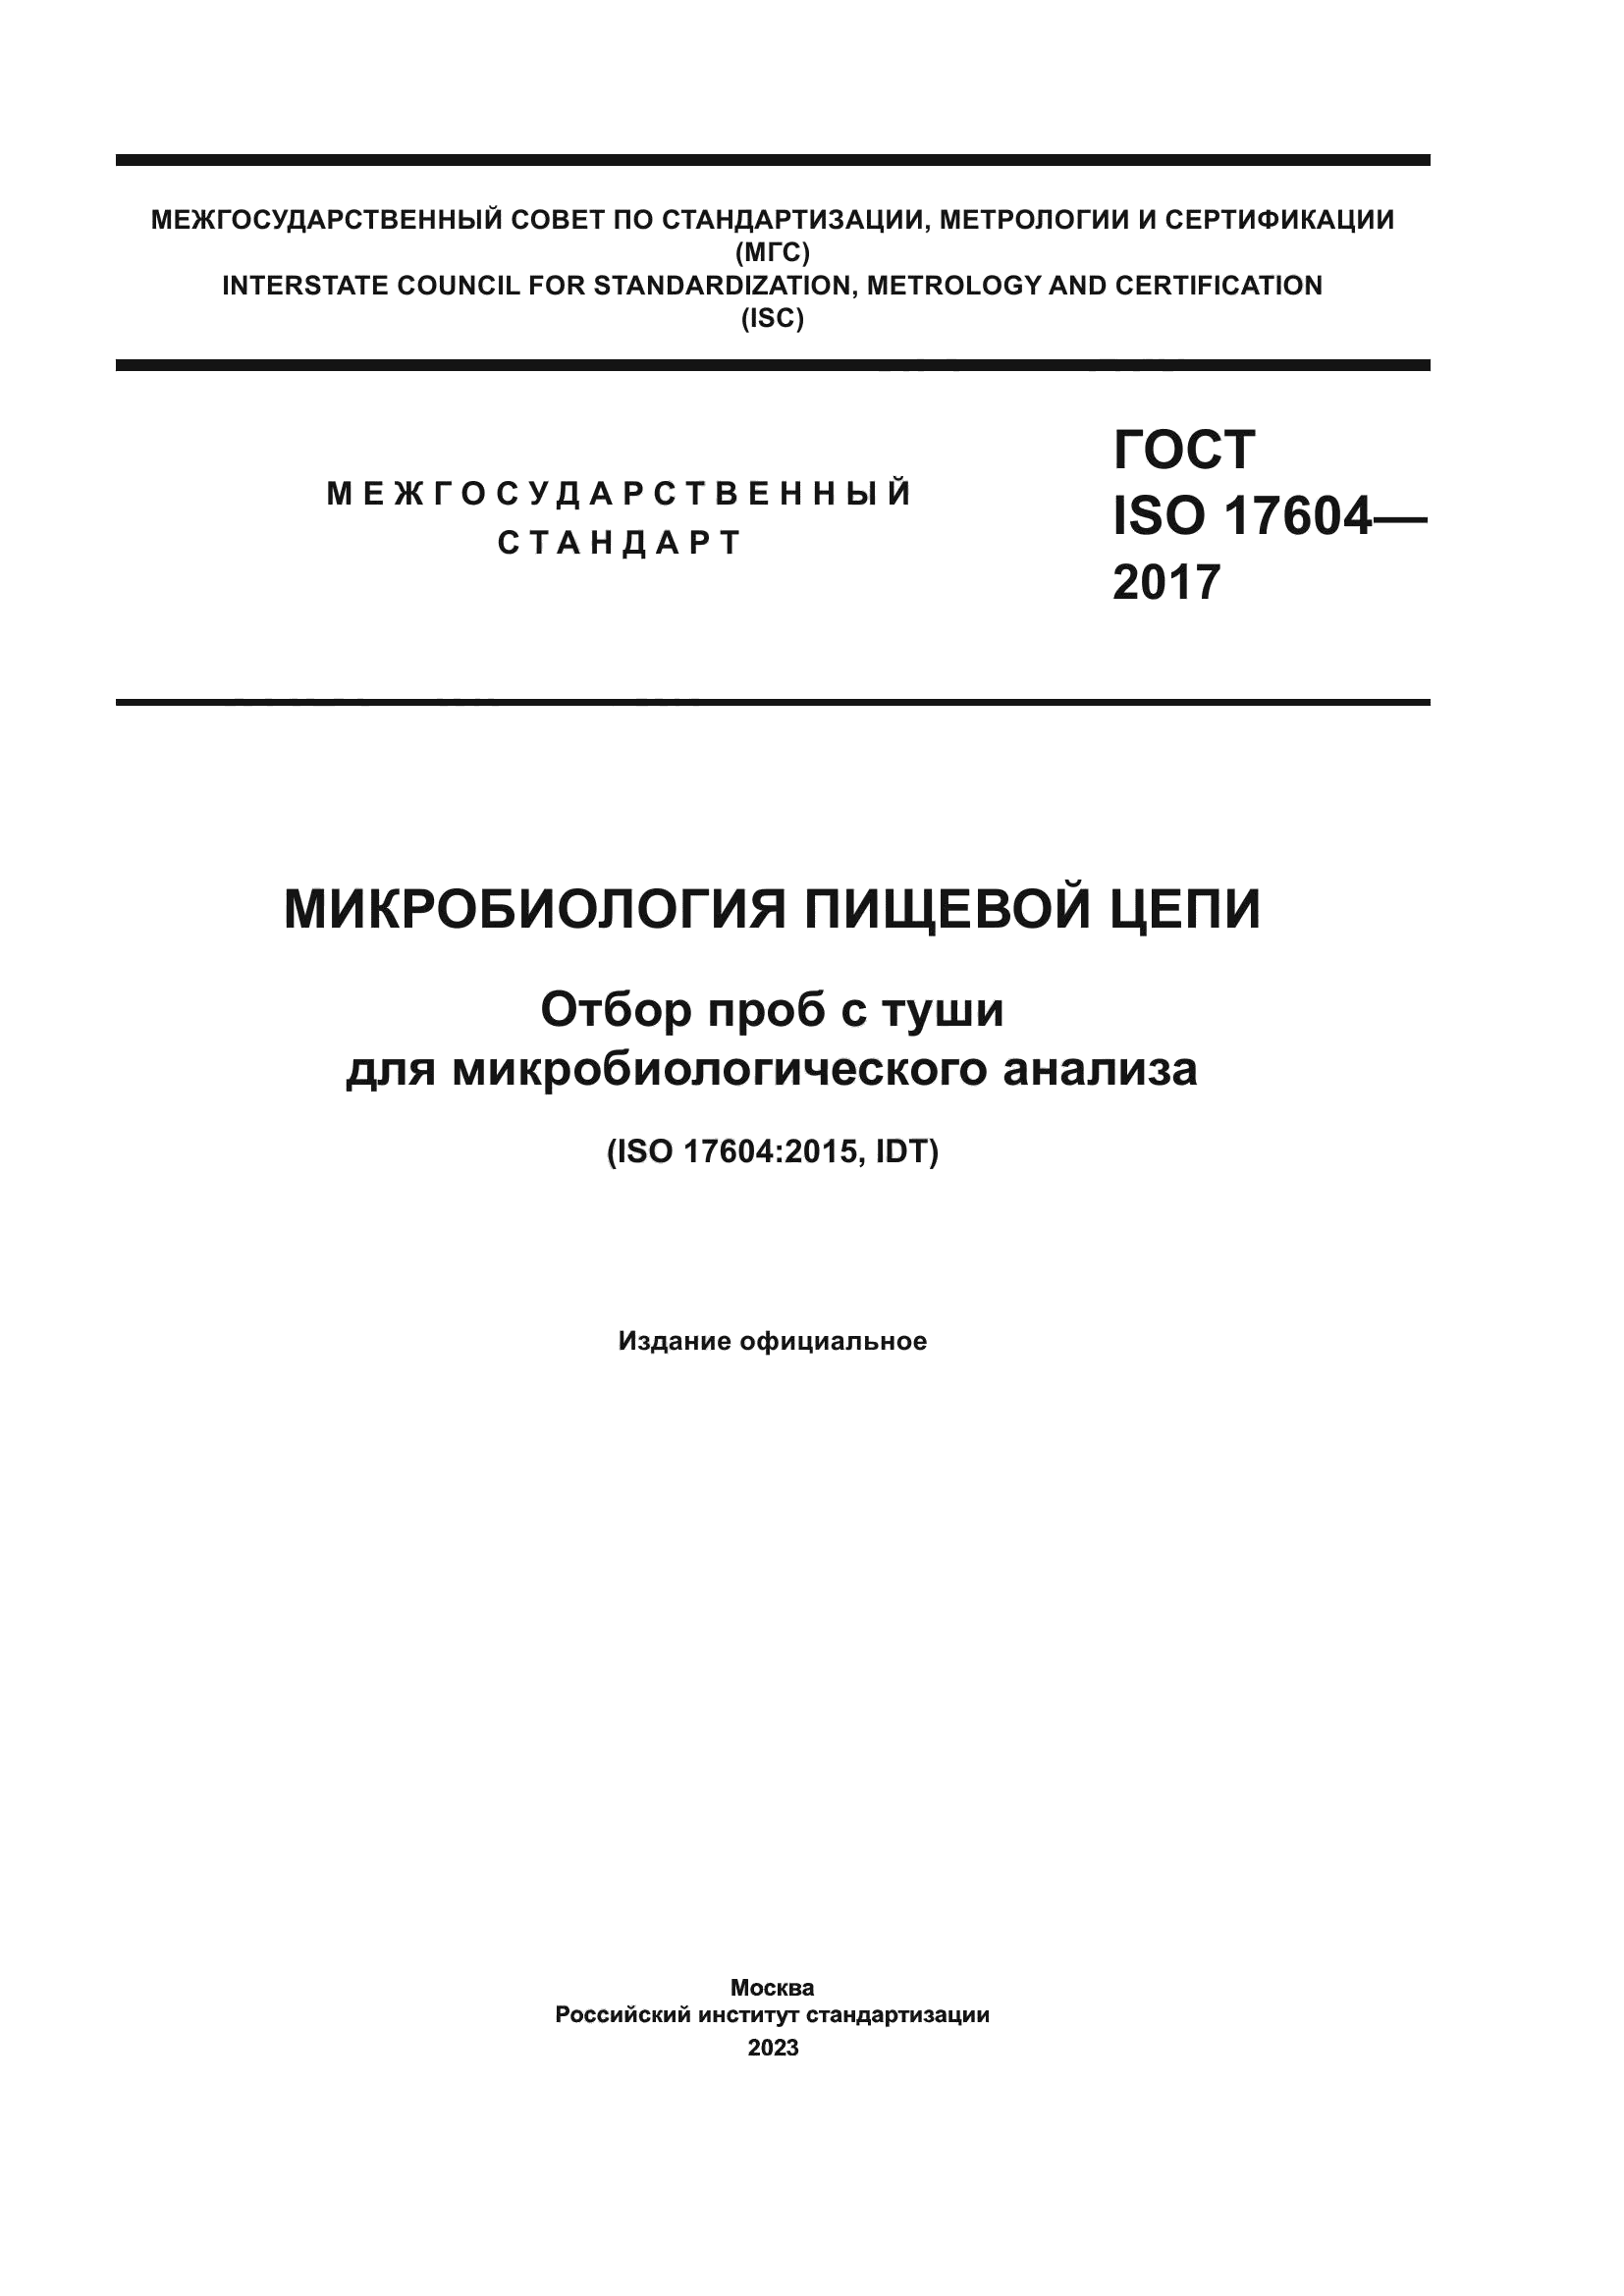 ГОСТ ISO 17604-2017